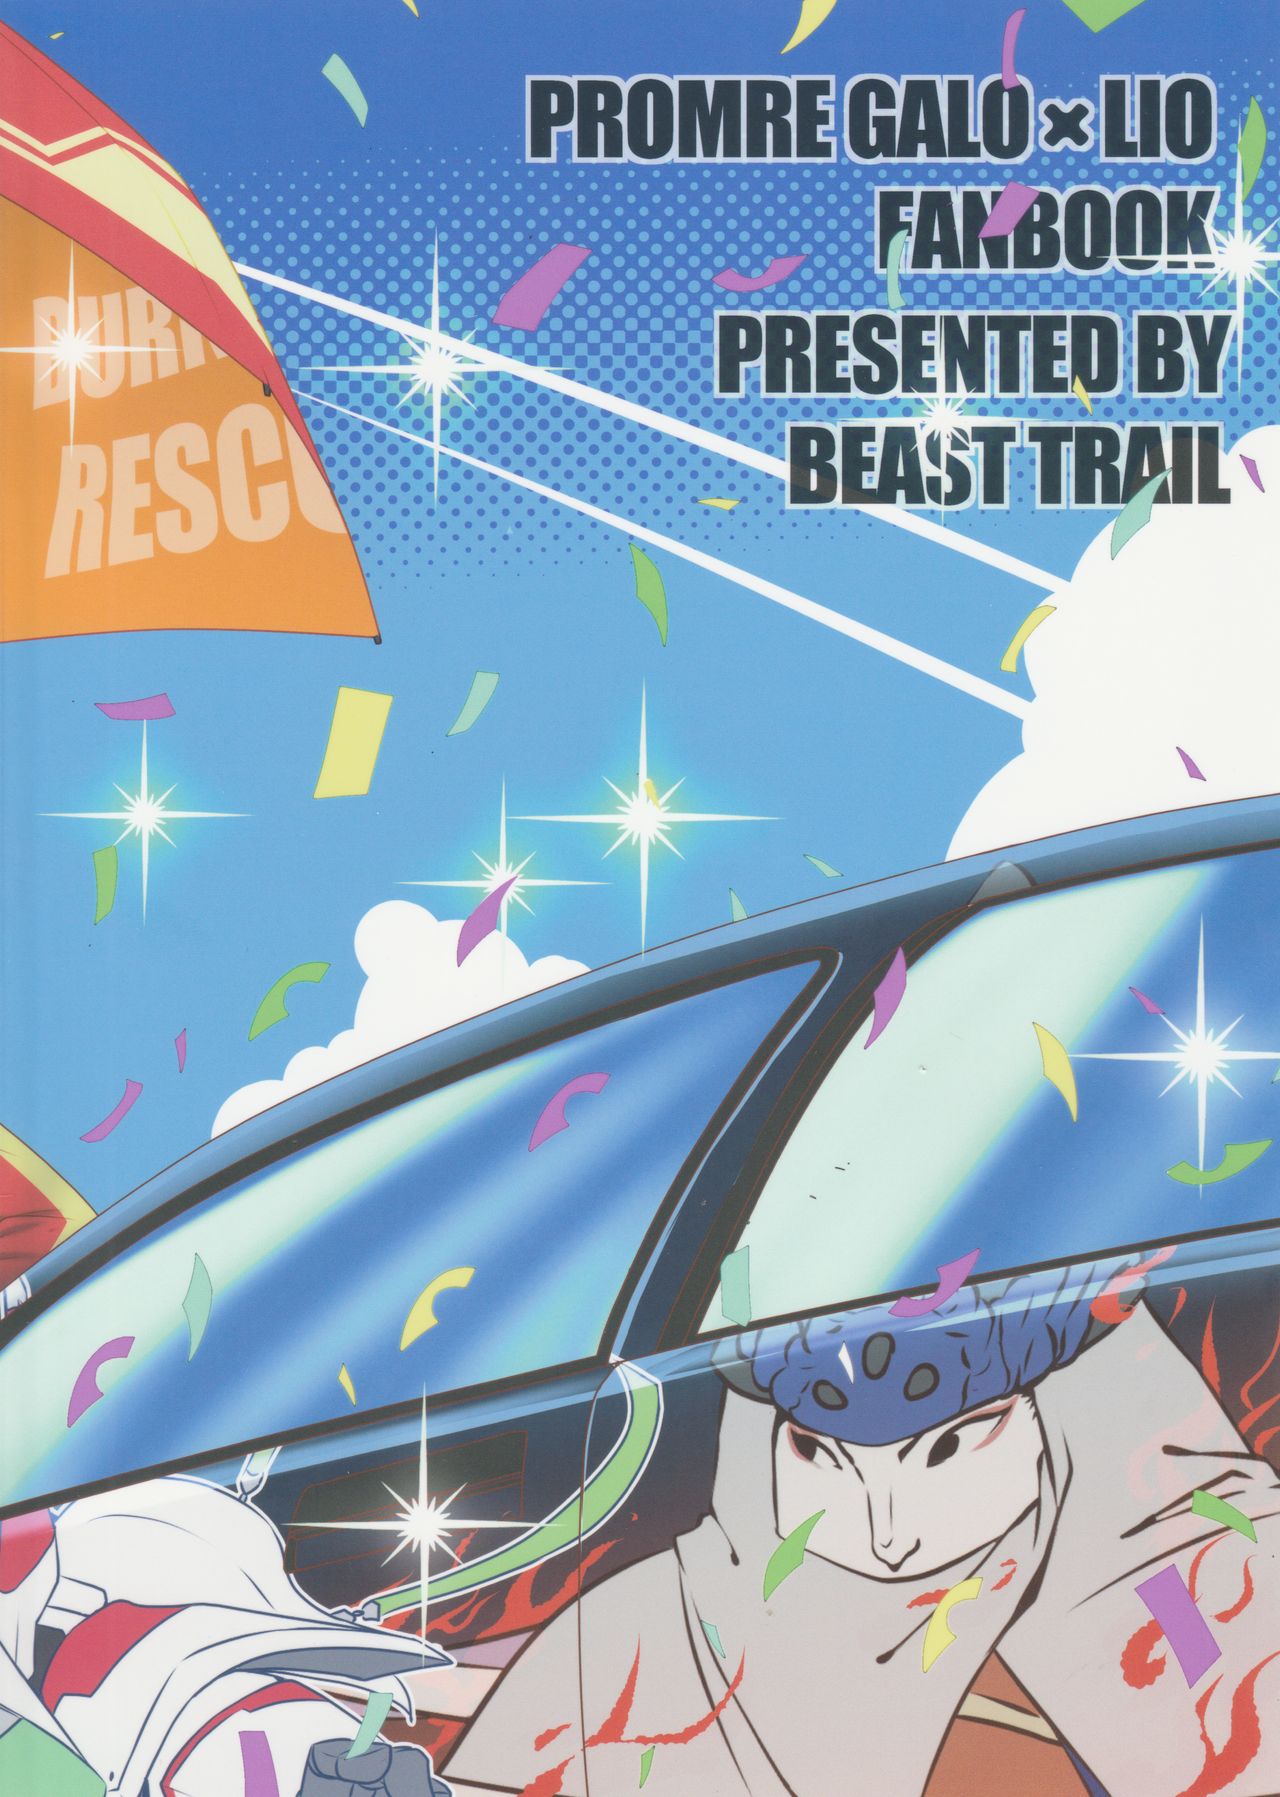 (完全燃消!!) [Beast Trail (ひばきち)] バーニングレスキューがスポンサーを募るようです。 (プロメア)